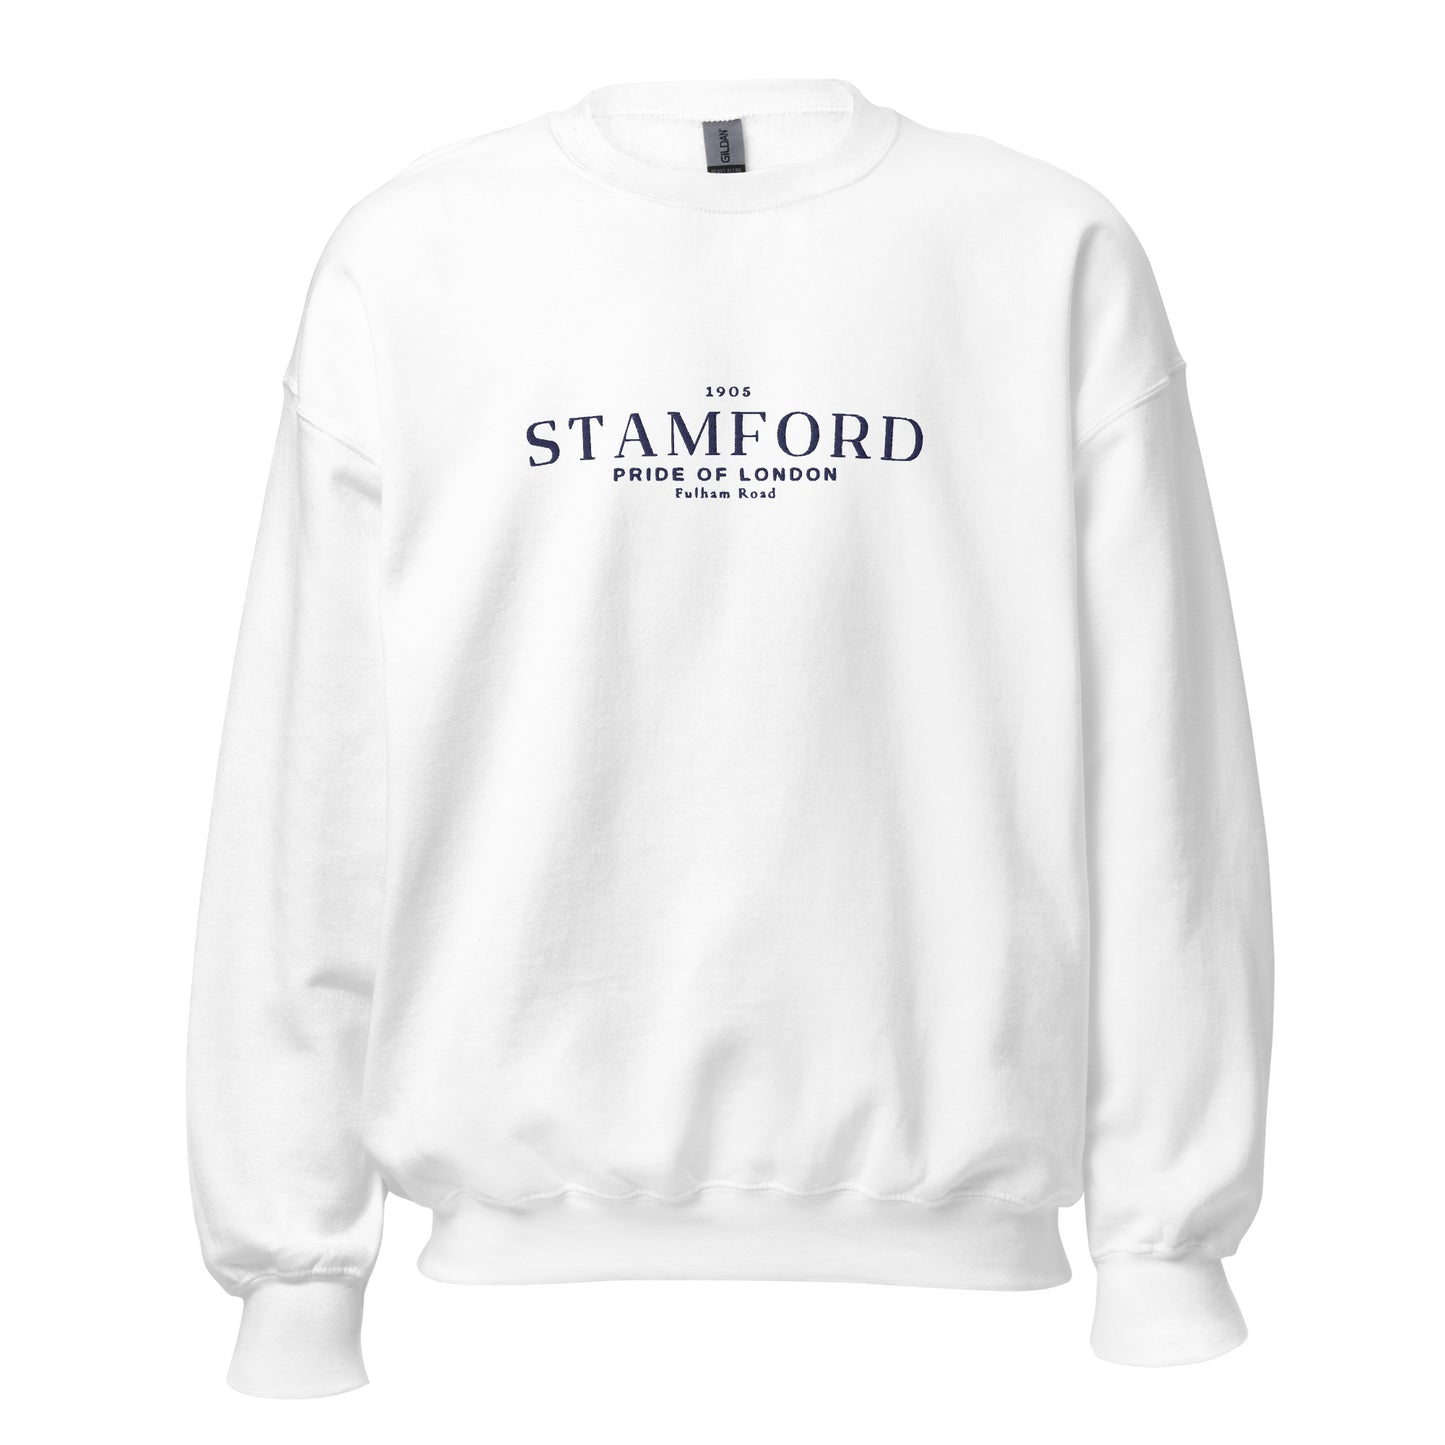 Stamford Retro Sweatshirt